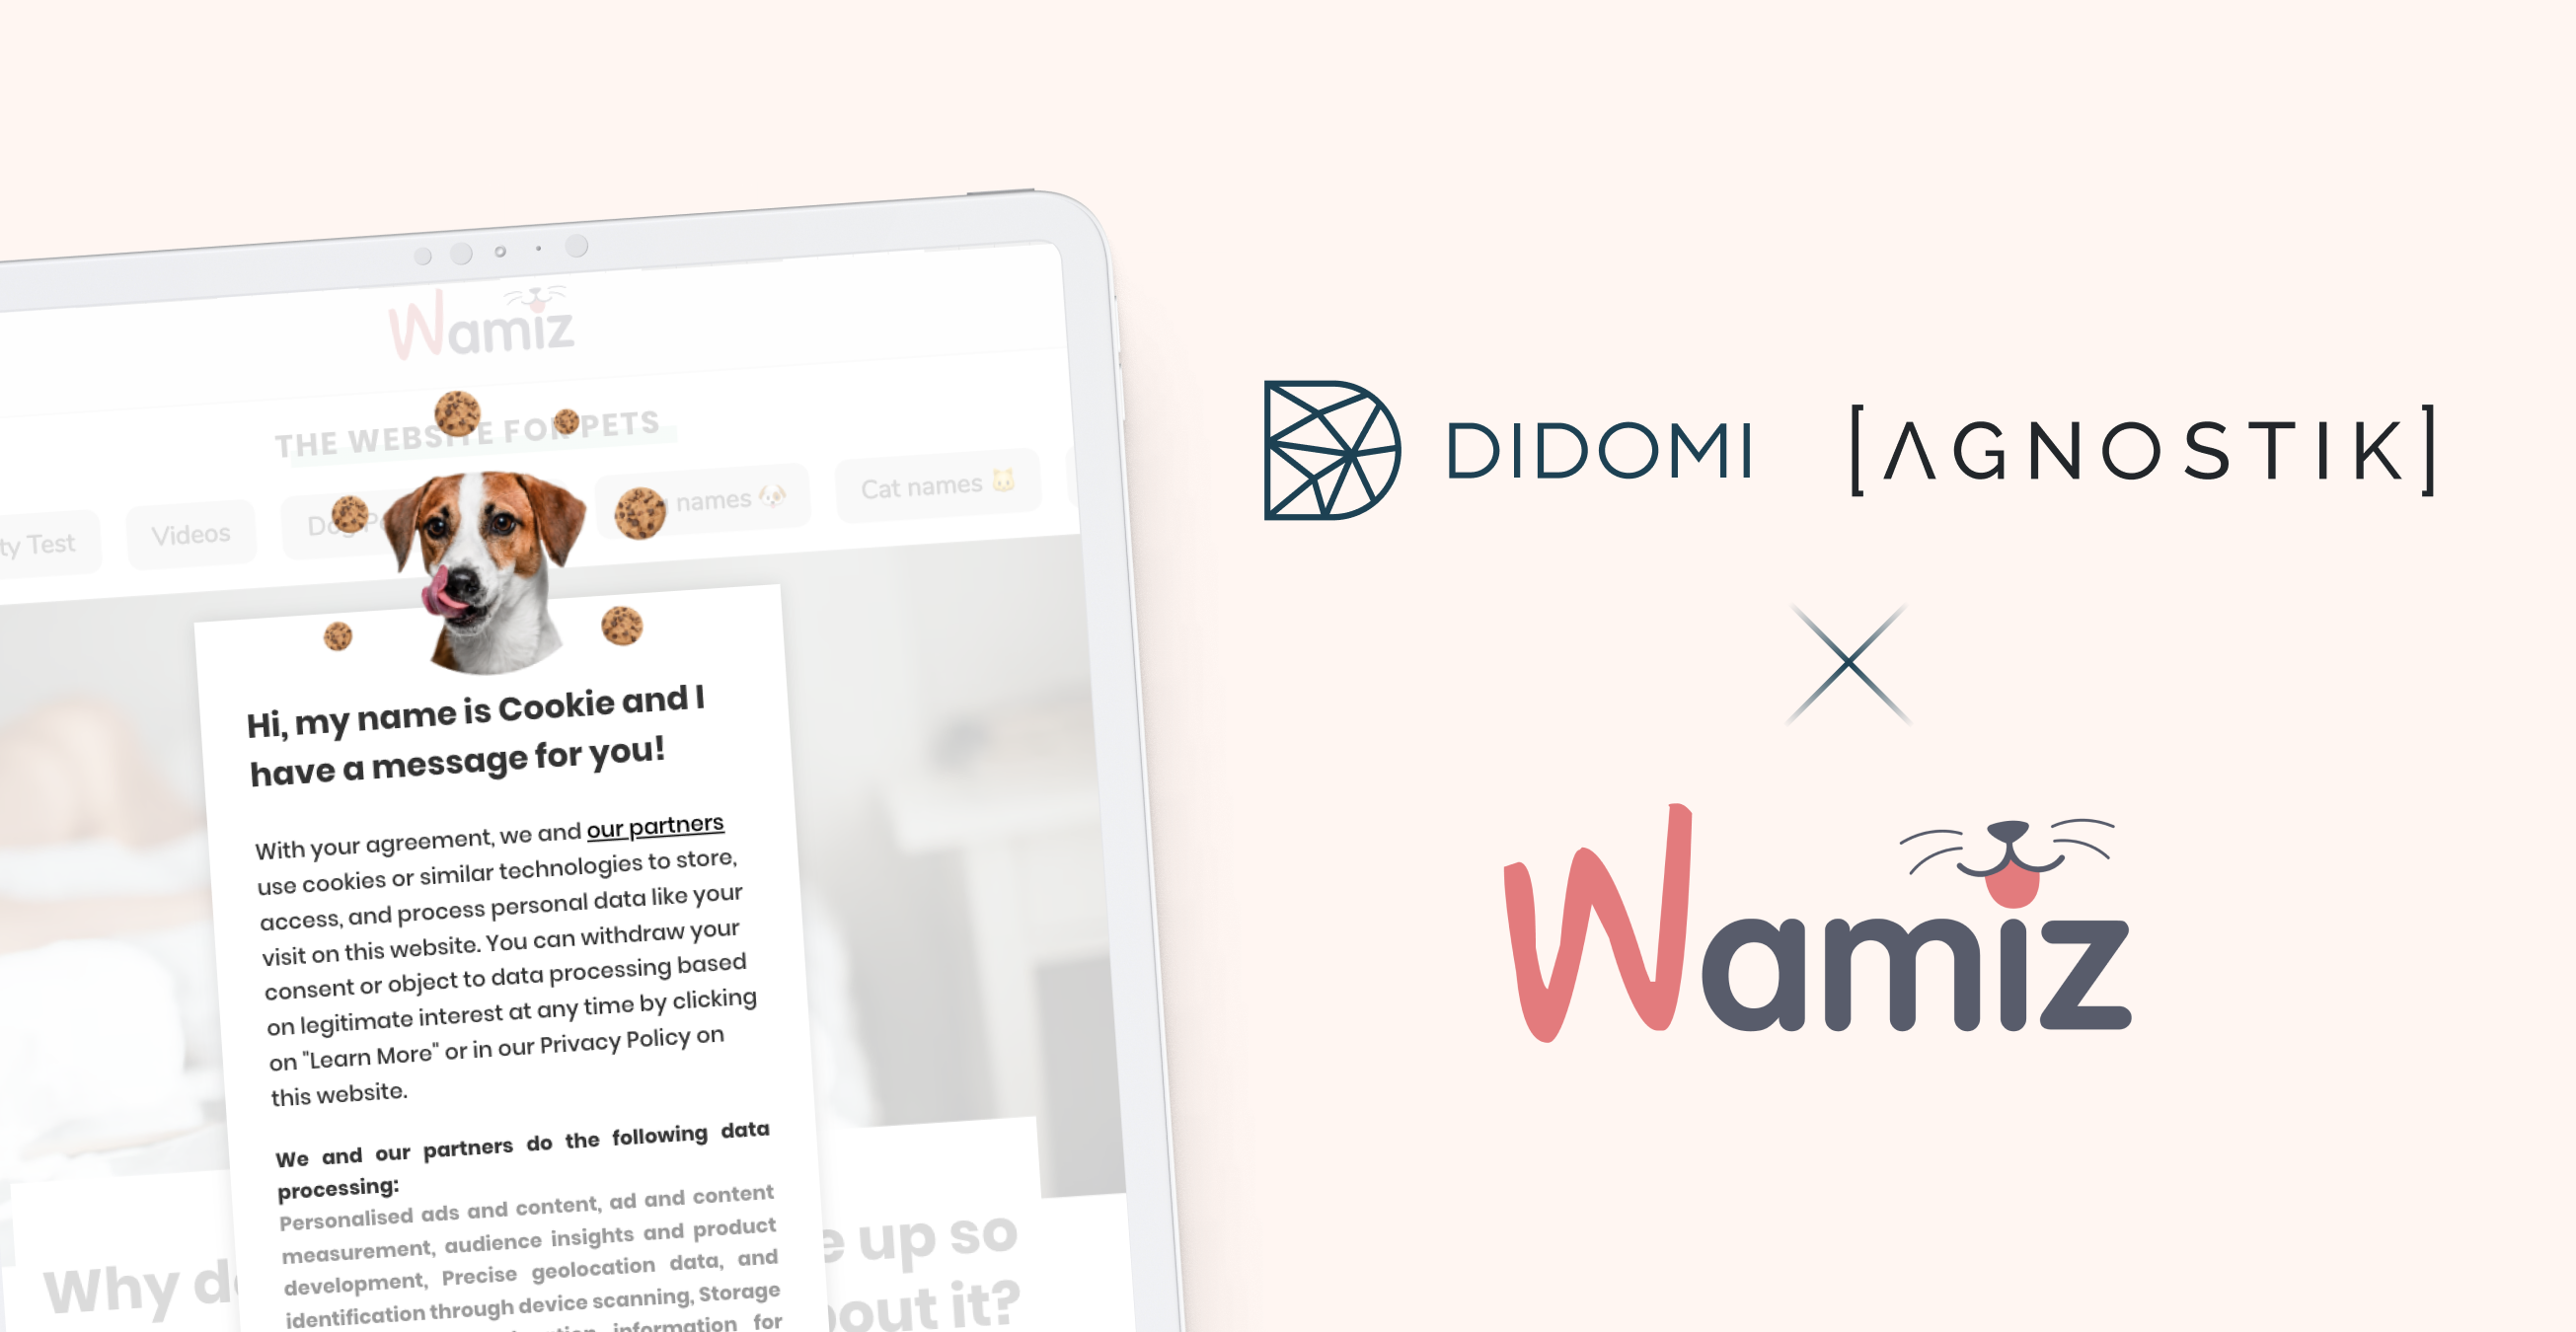 Comment Wamiz a pu allier consentement et gestion des partenaires grâce à la solution Didomi & Agnostik ?